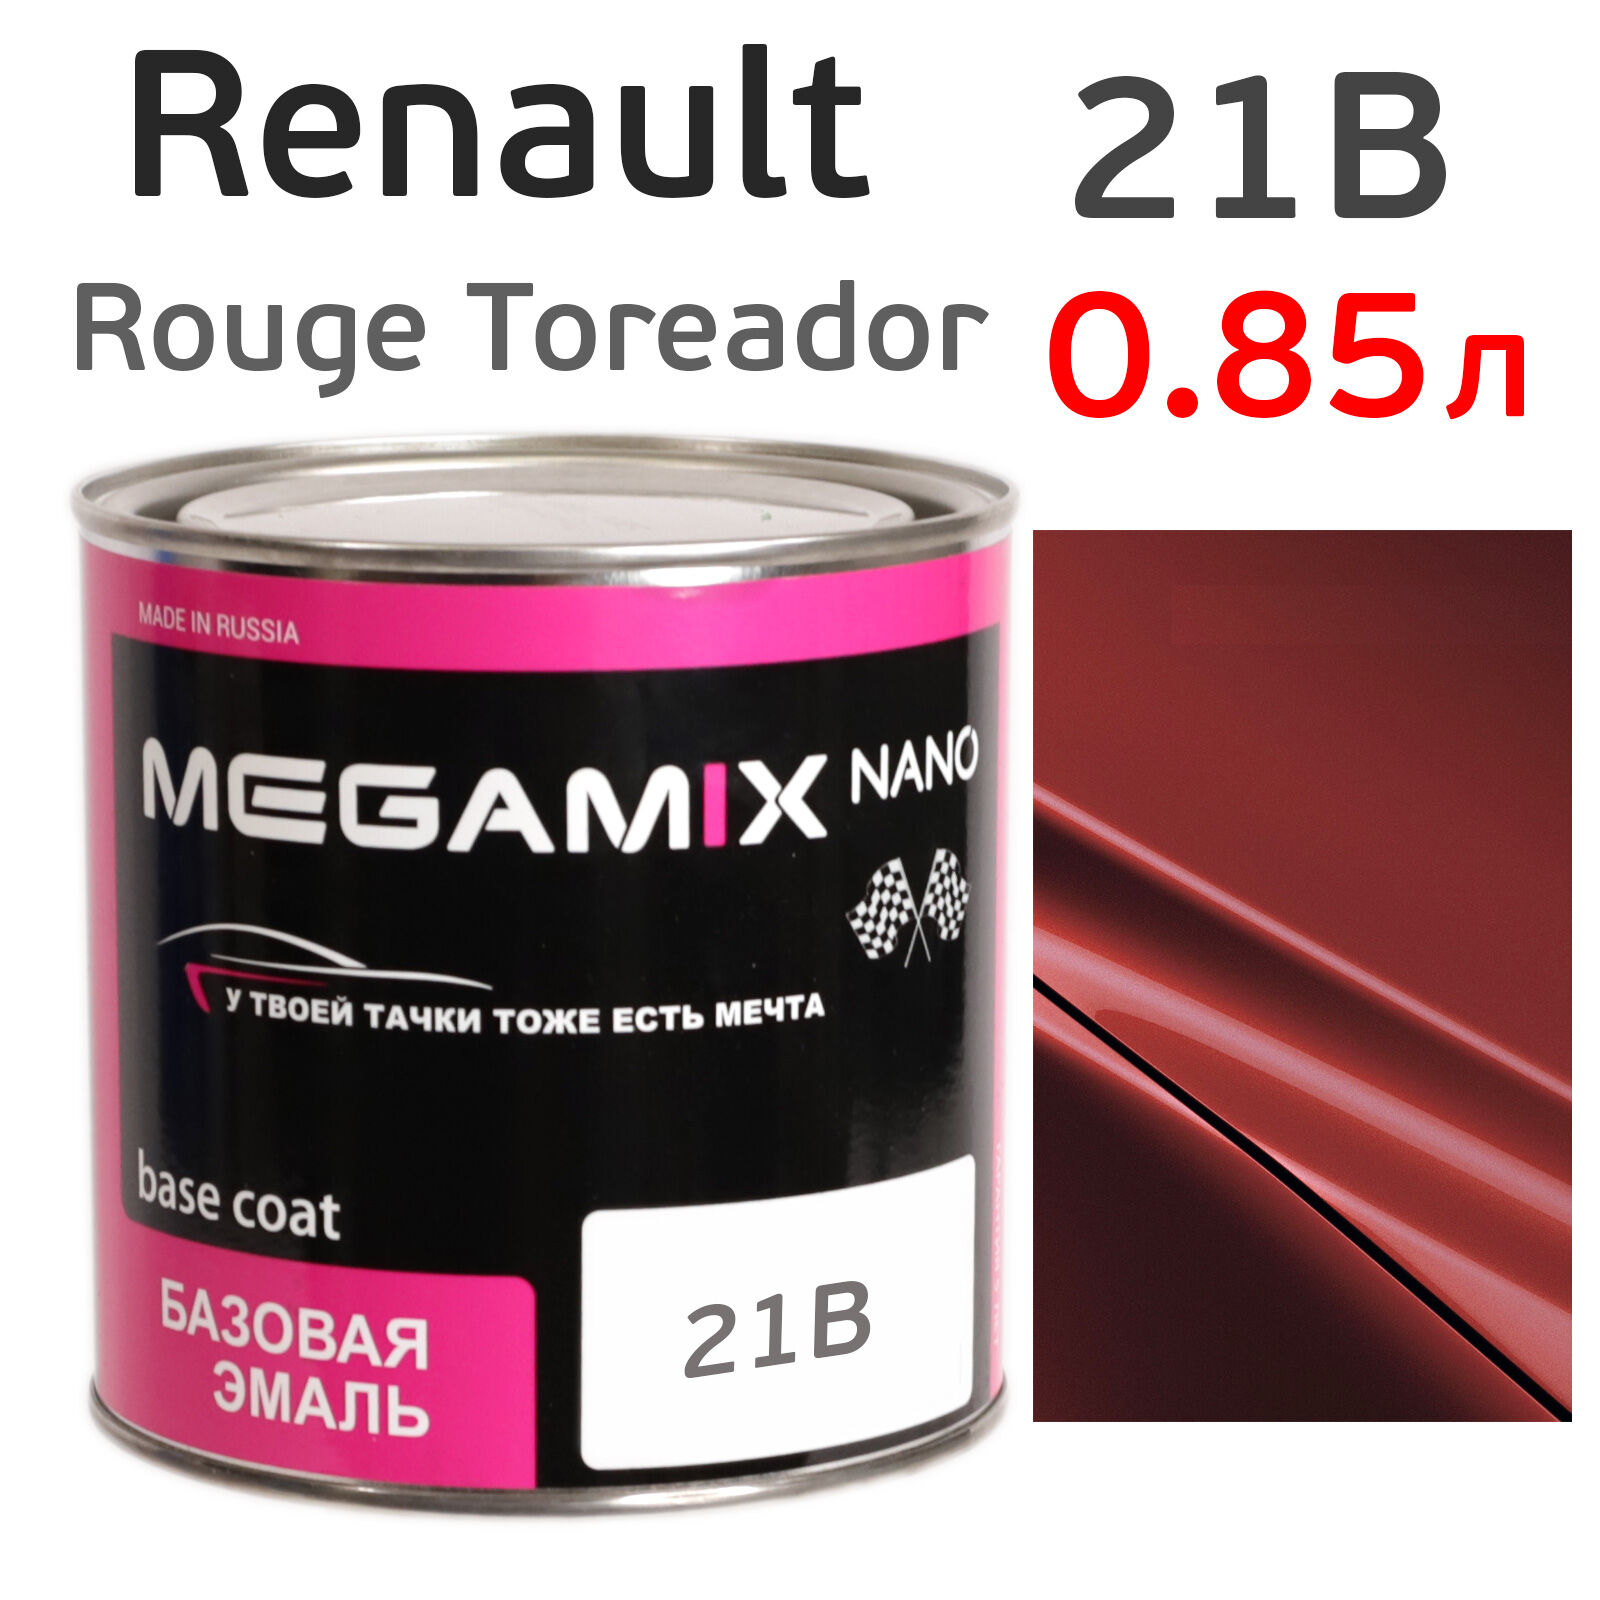 Автоэмаль MegaMIX (0.85л) Renault 21B Rouge Toreador, металлик, базисная эмаль под лак